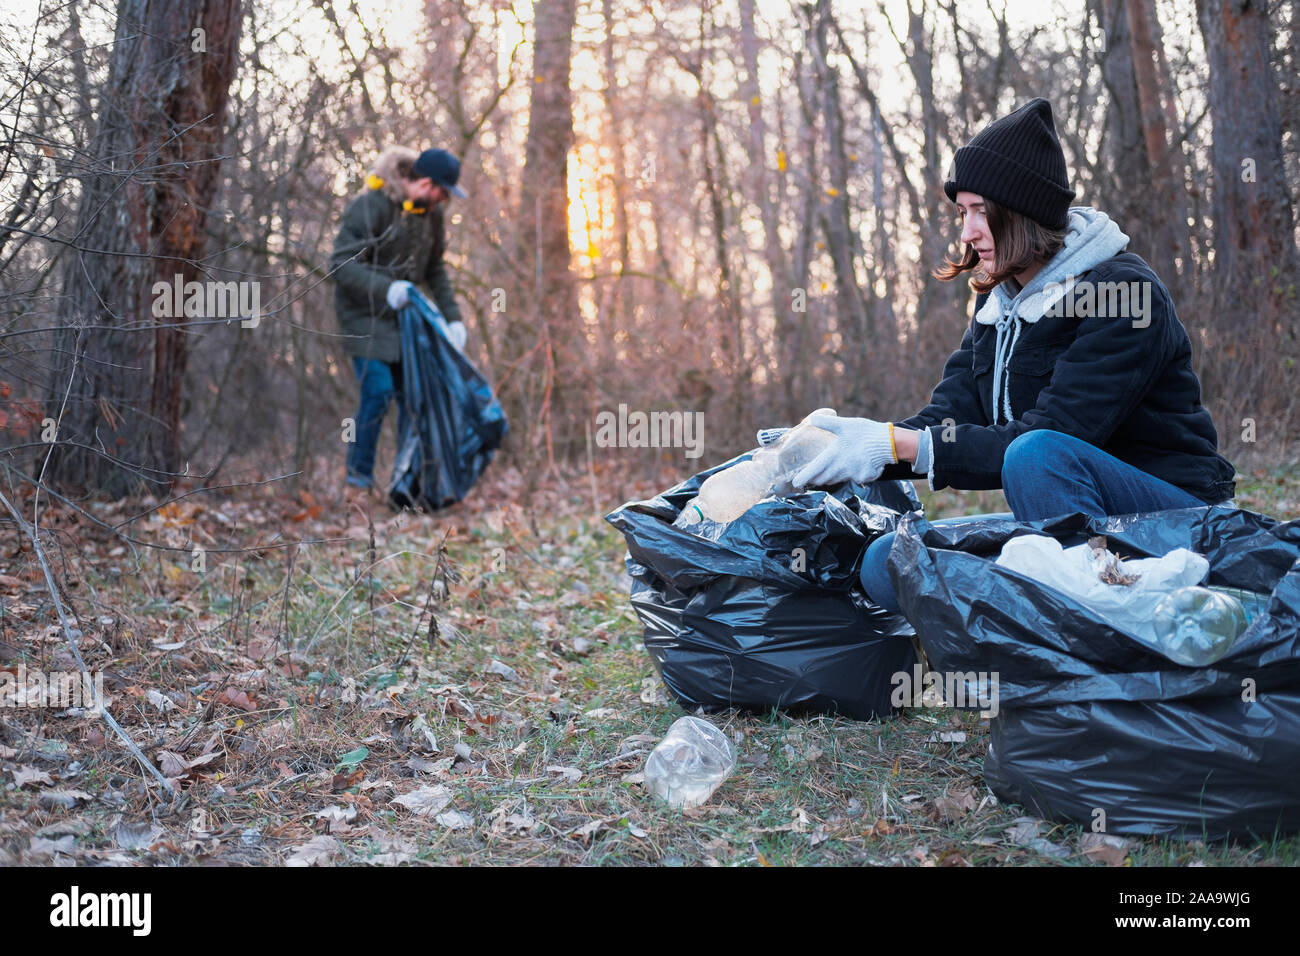 Les gens nettoyer la forêt de déchets en plastique. Concept de sensibilisation à l'environnement : l'homme et la femme ramasser des déchets plastiques à partir de la forêt tout en marchant ou Banque D'Images